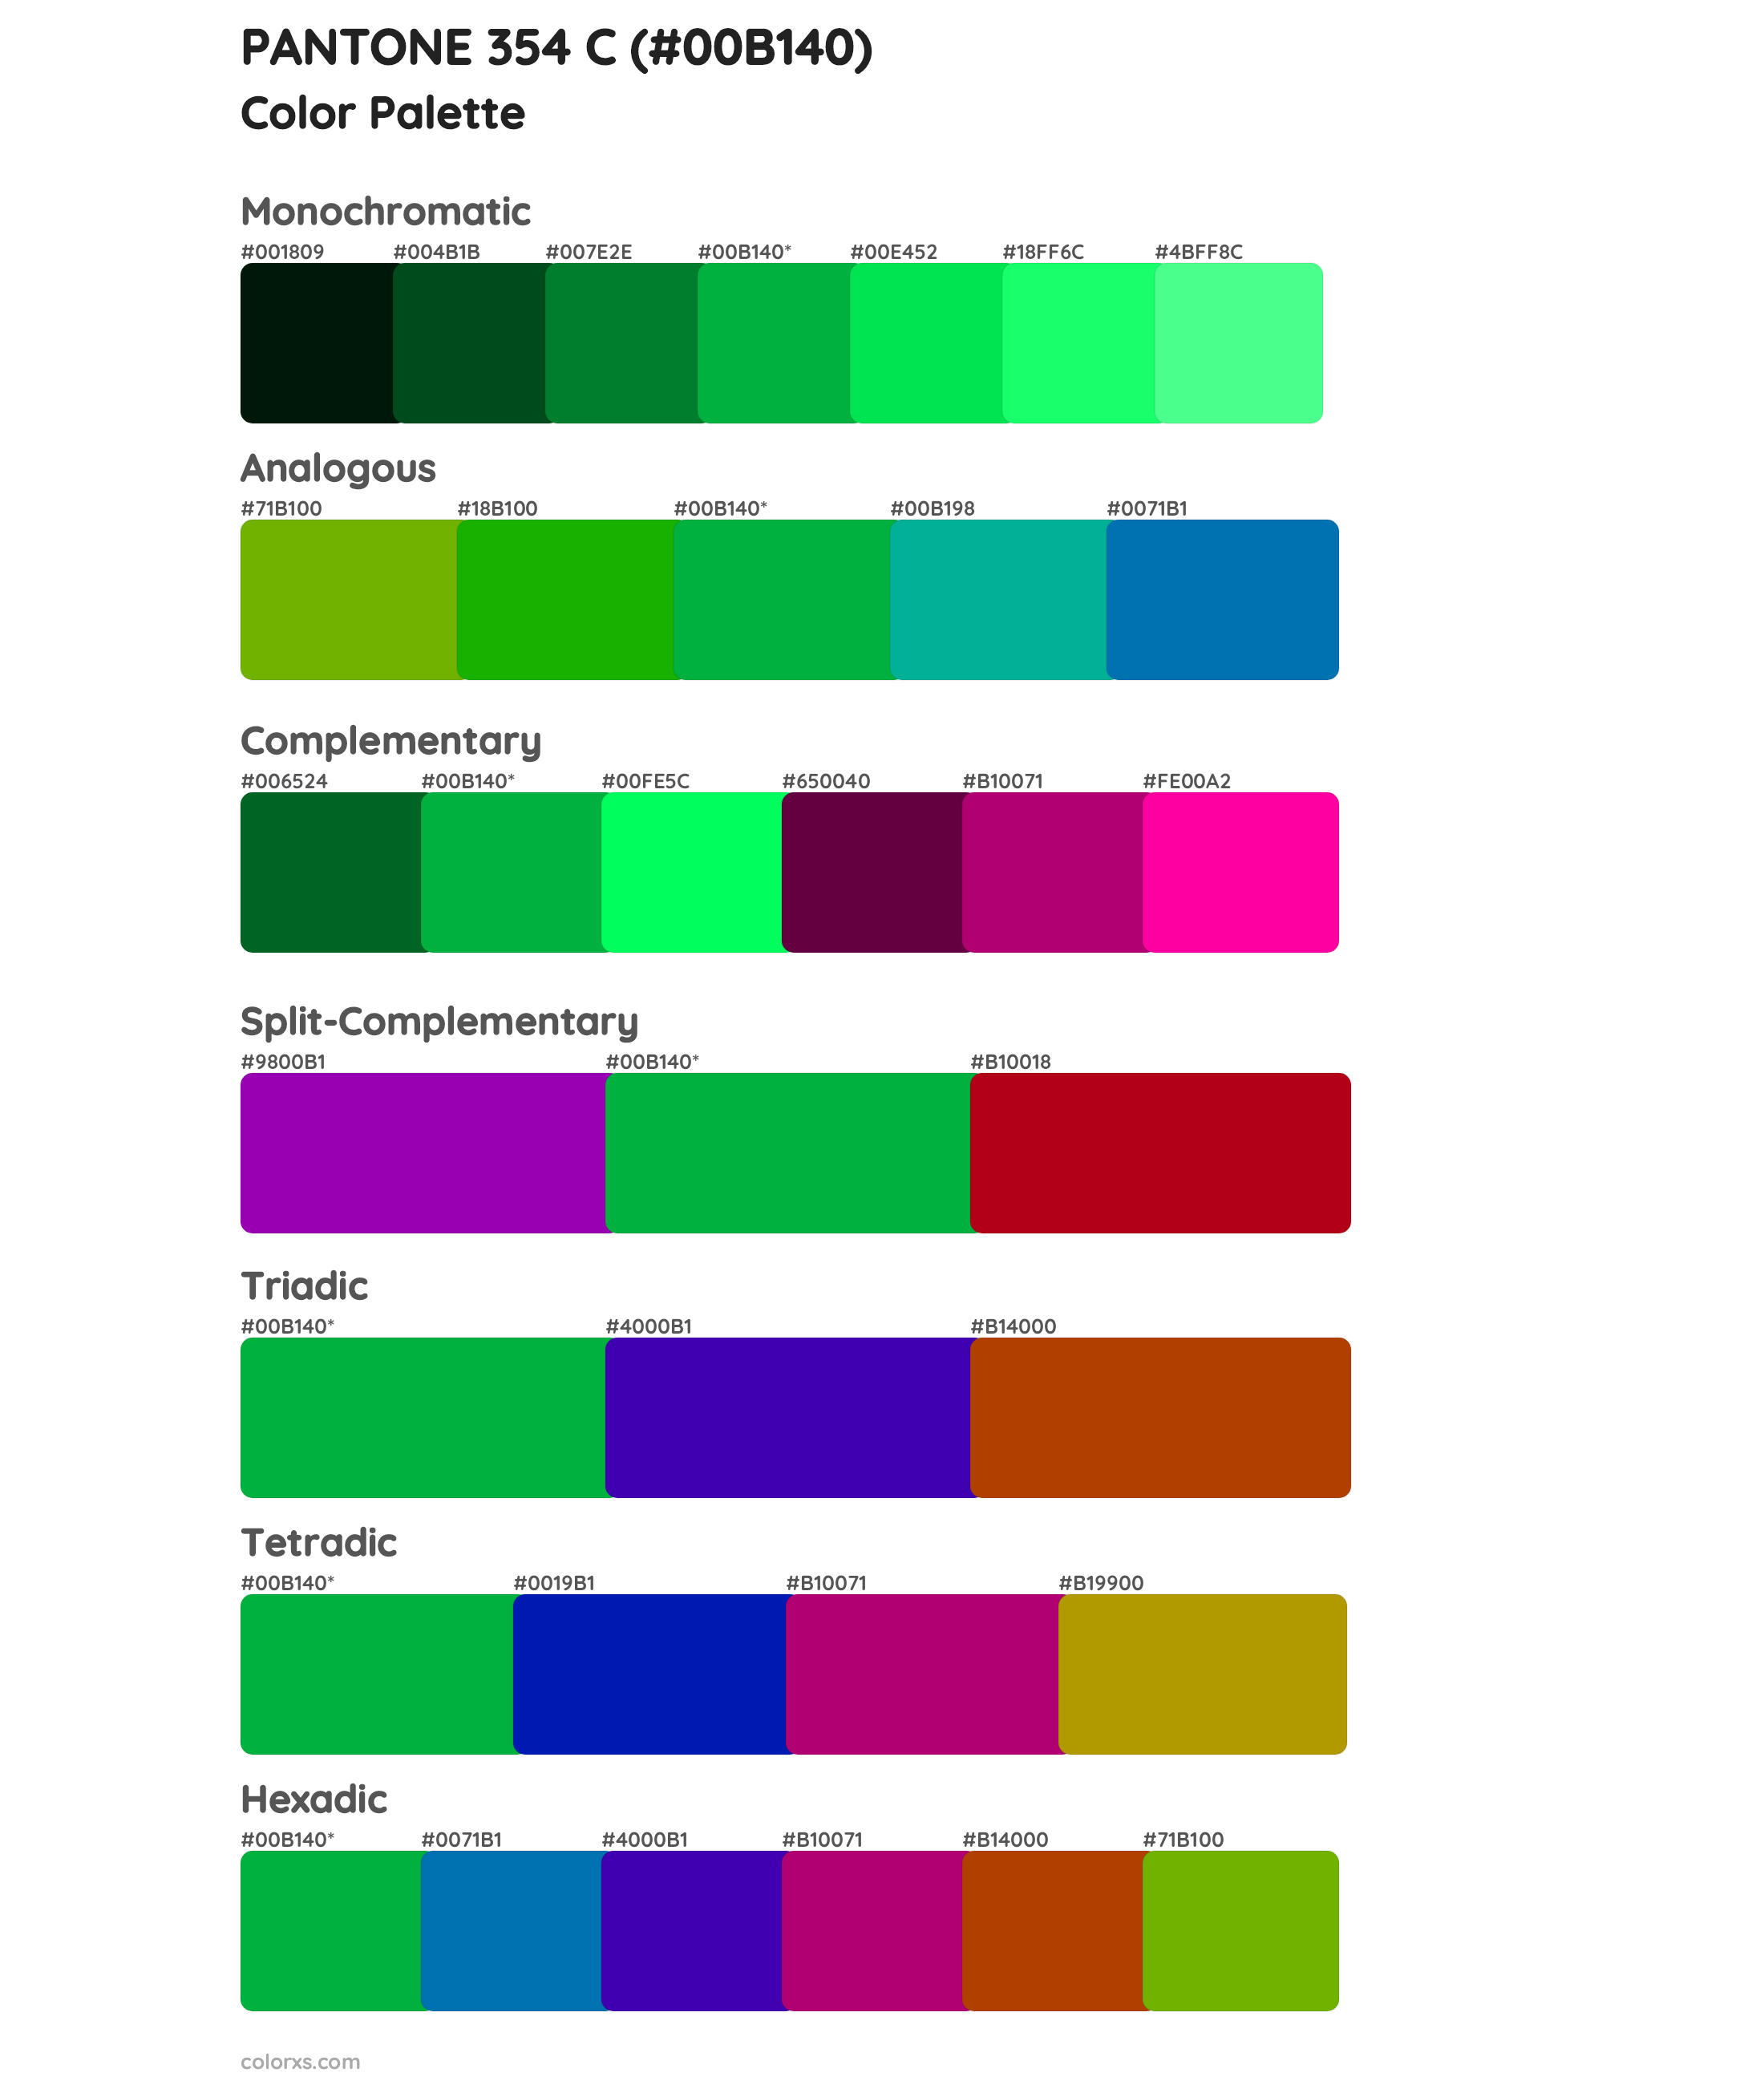 PANTONE 354 C color palettes and color scheme combinations - colorxs.com